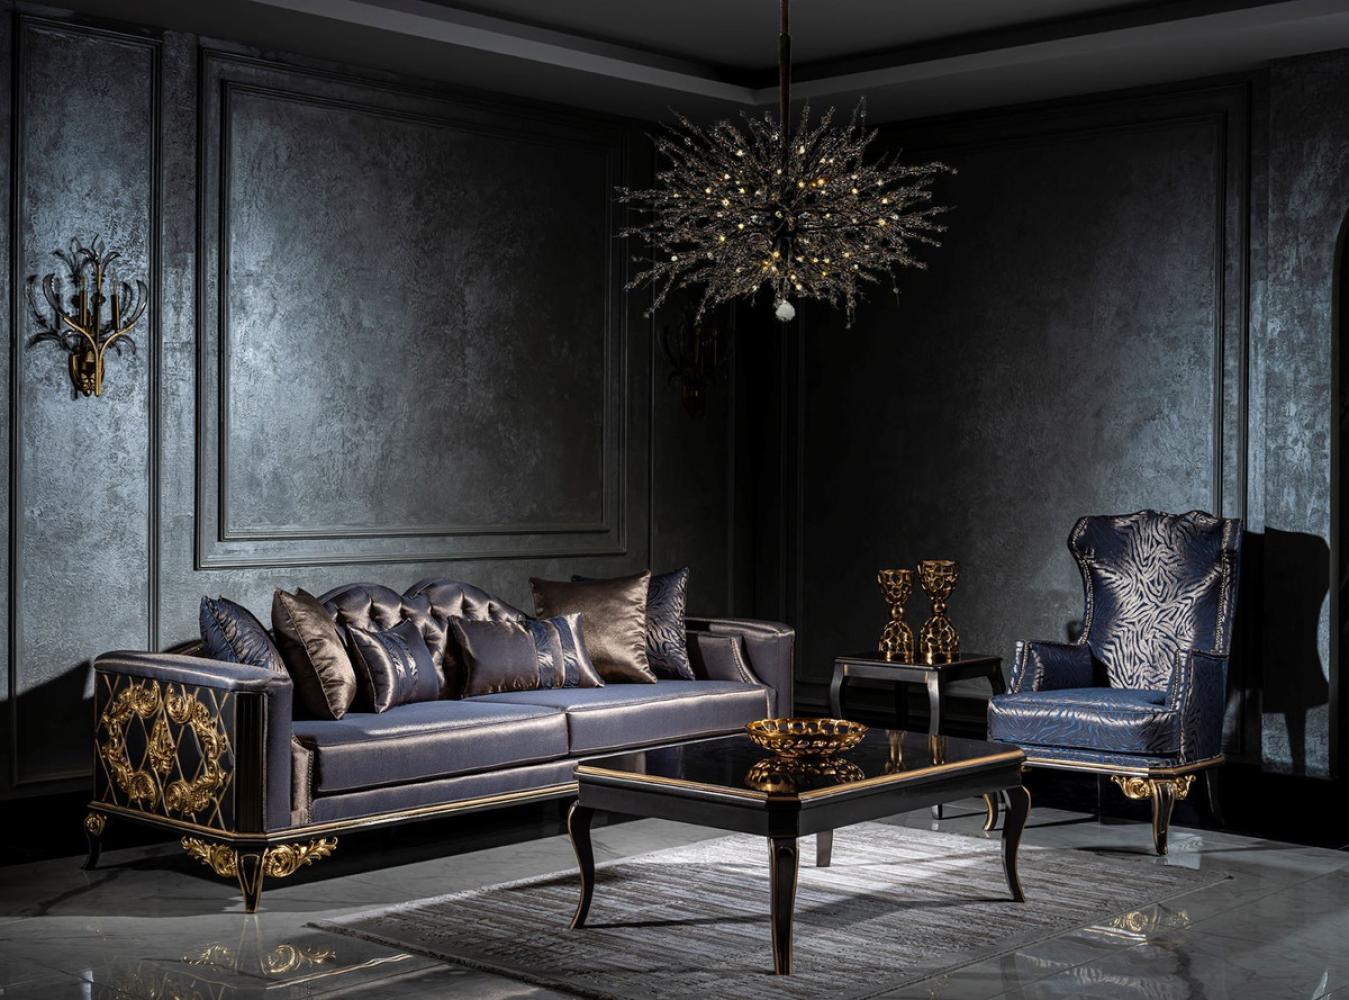 Casa Padrino Luxus Barock Wohnzimmer Set Blau / Schwarz / Gold - 2 Sofas & 2 Sessel & 1 Couchtisch - Wohnzimmer Möbel im Barockstil - Edel & Prunkvoll Bild 1